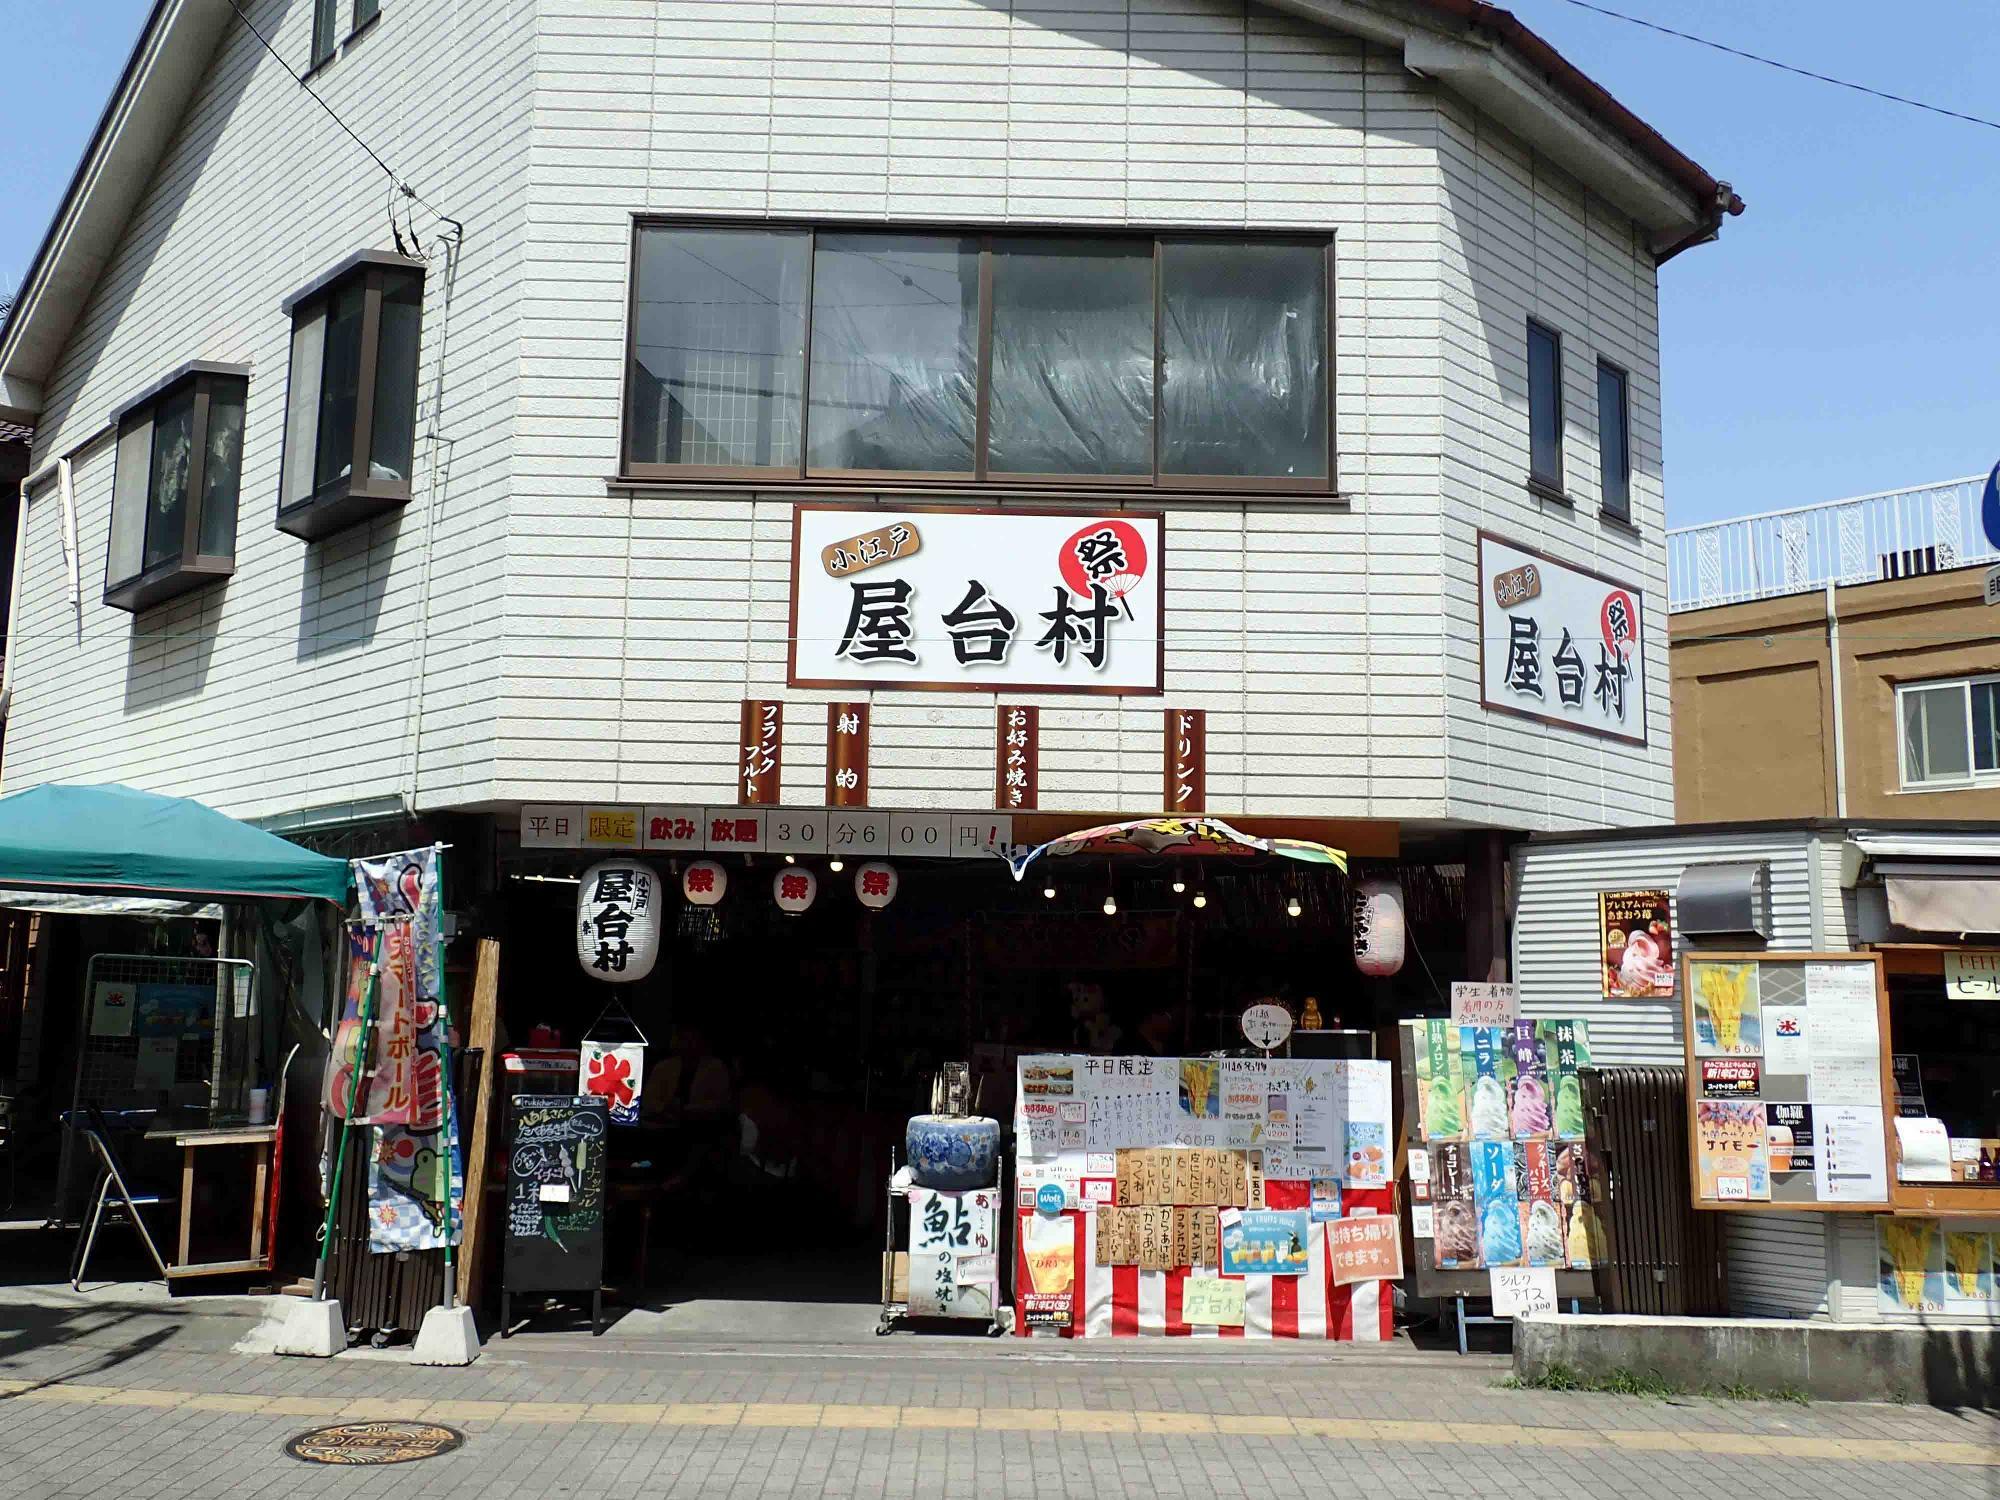 「櫻井商店」の近くの交差点に面しています